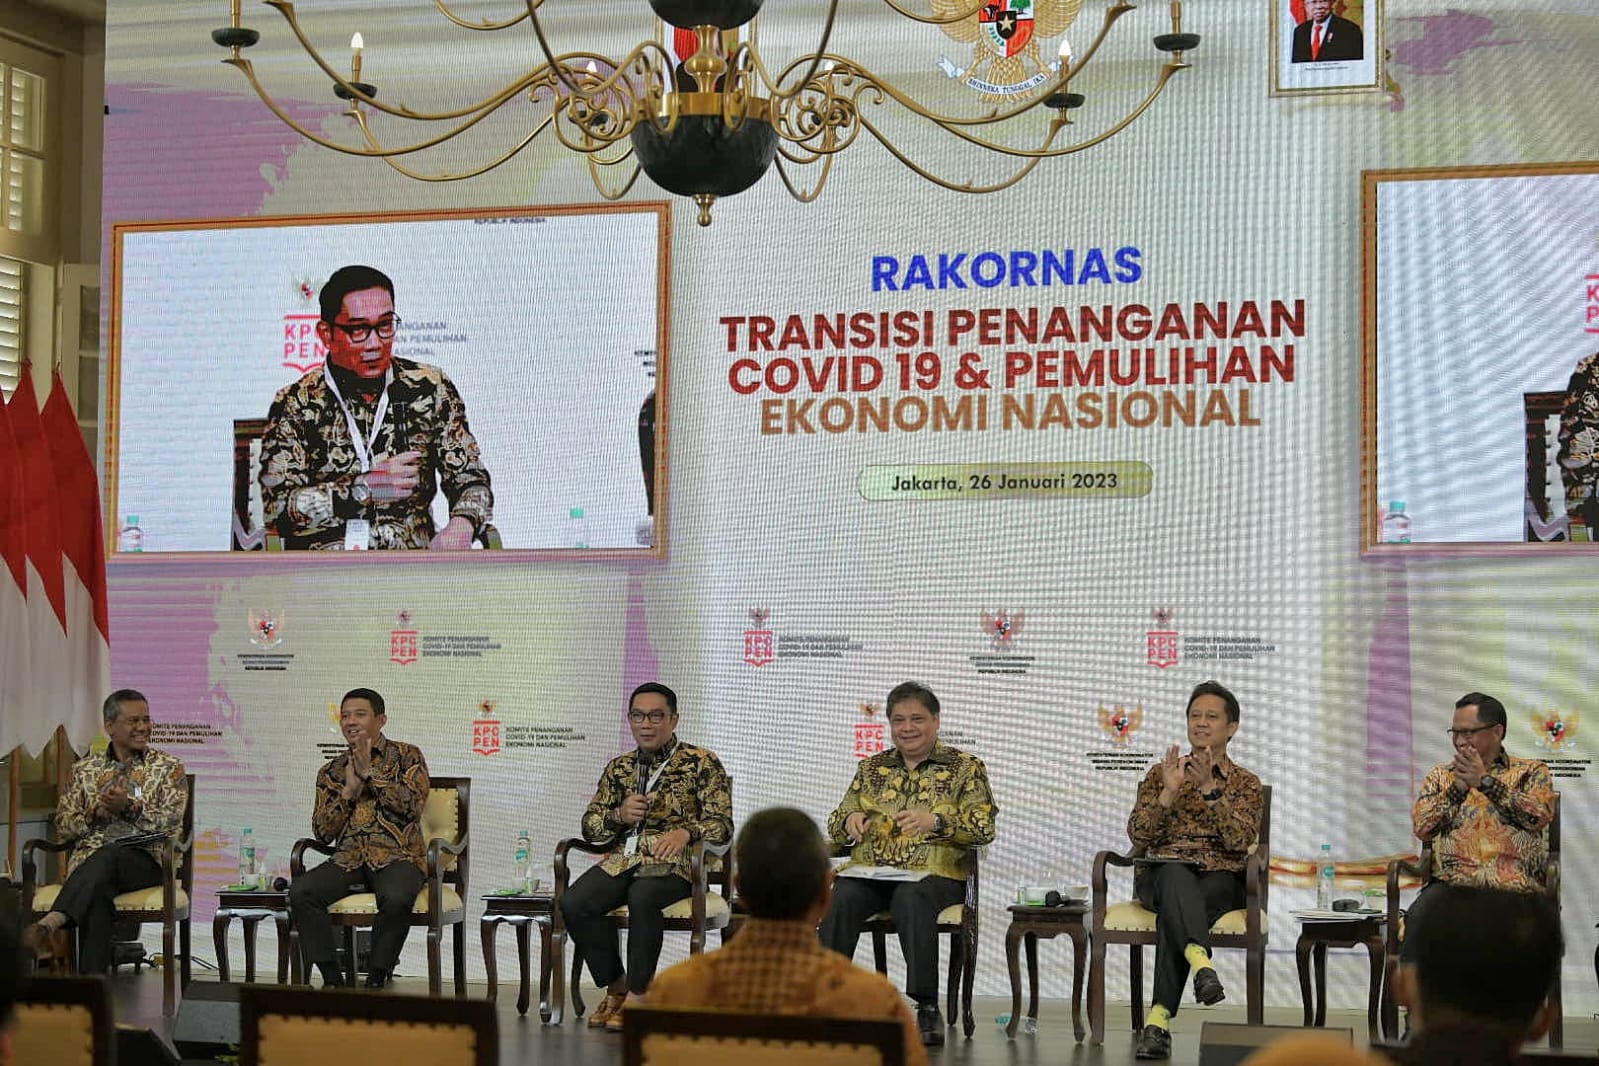 Jawa Barat Dapat Apresiasi dari Pusat Dalam Penanganan Covid-19 dan Pemulihan Ekonomi